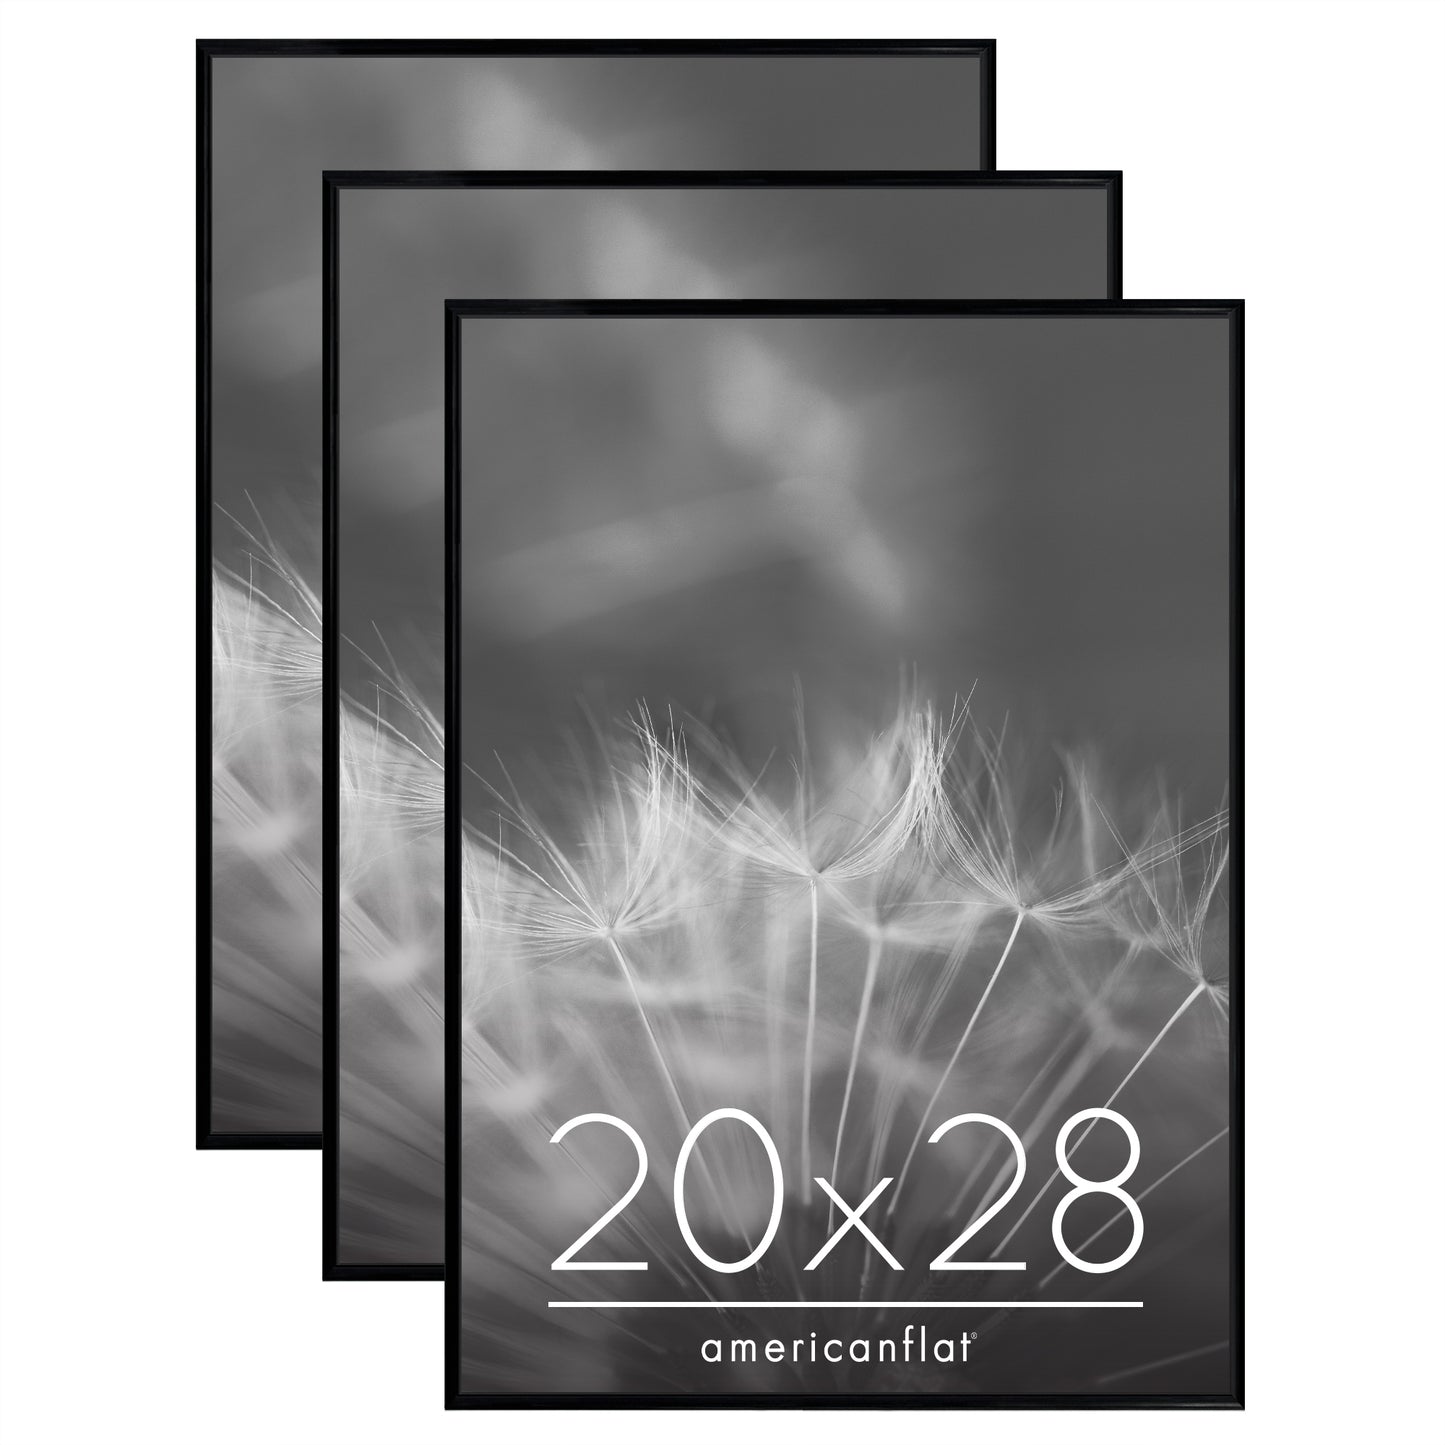 3 Pack - Black Poster Frame with Slimline Molding | Choose Size